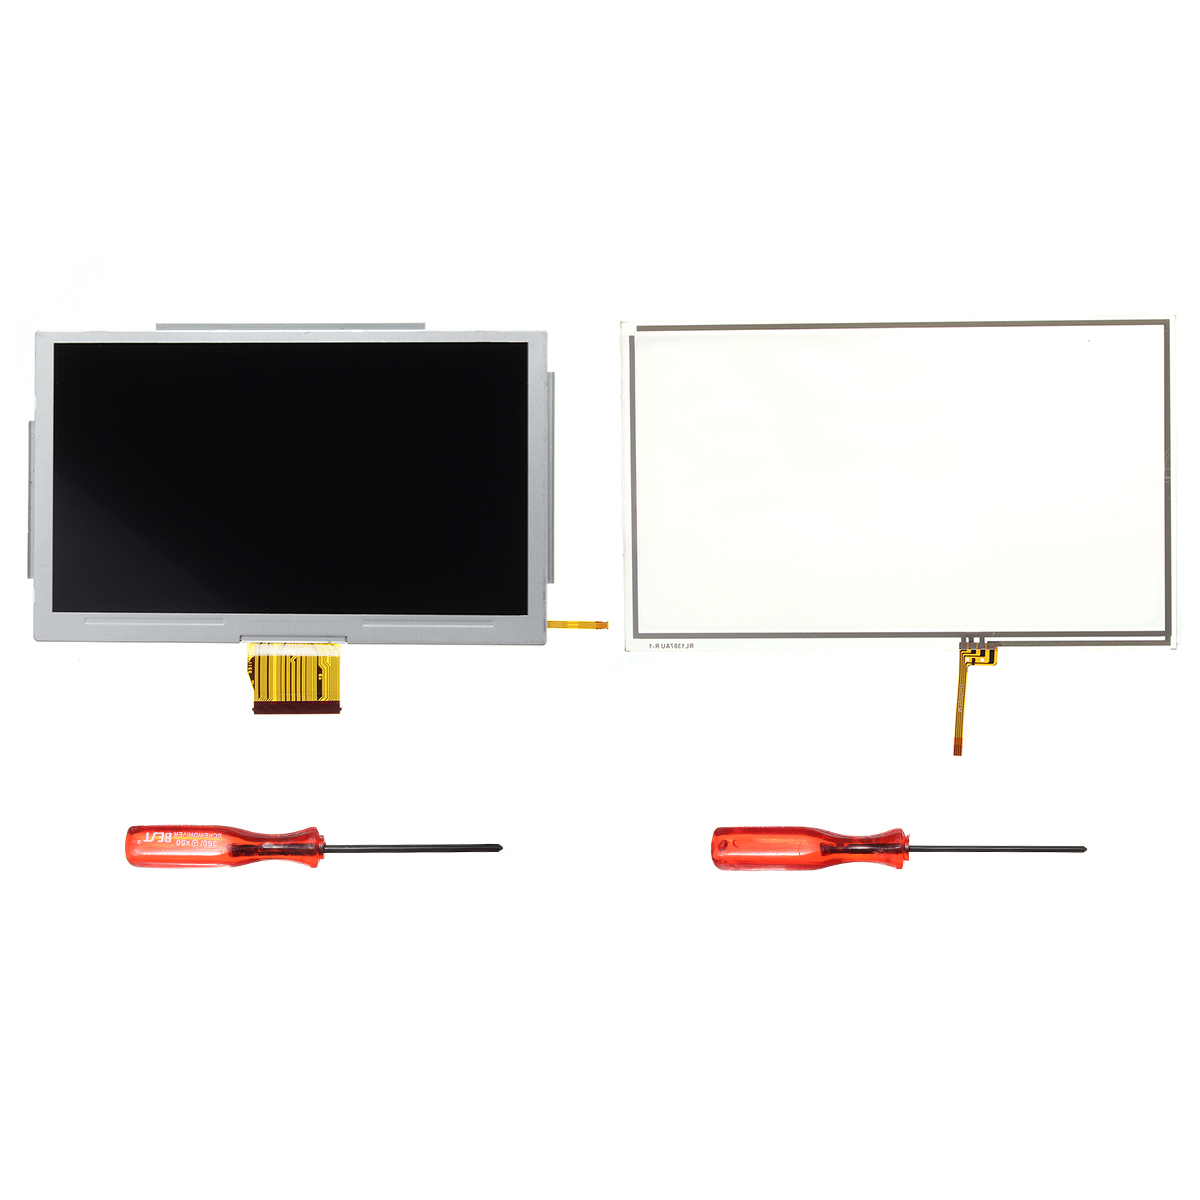 

Замена 2 Набор LCD Ремонт экрана планшета Инструмент Сенсорный экран для игровой консоли Nintendo Wii U